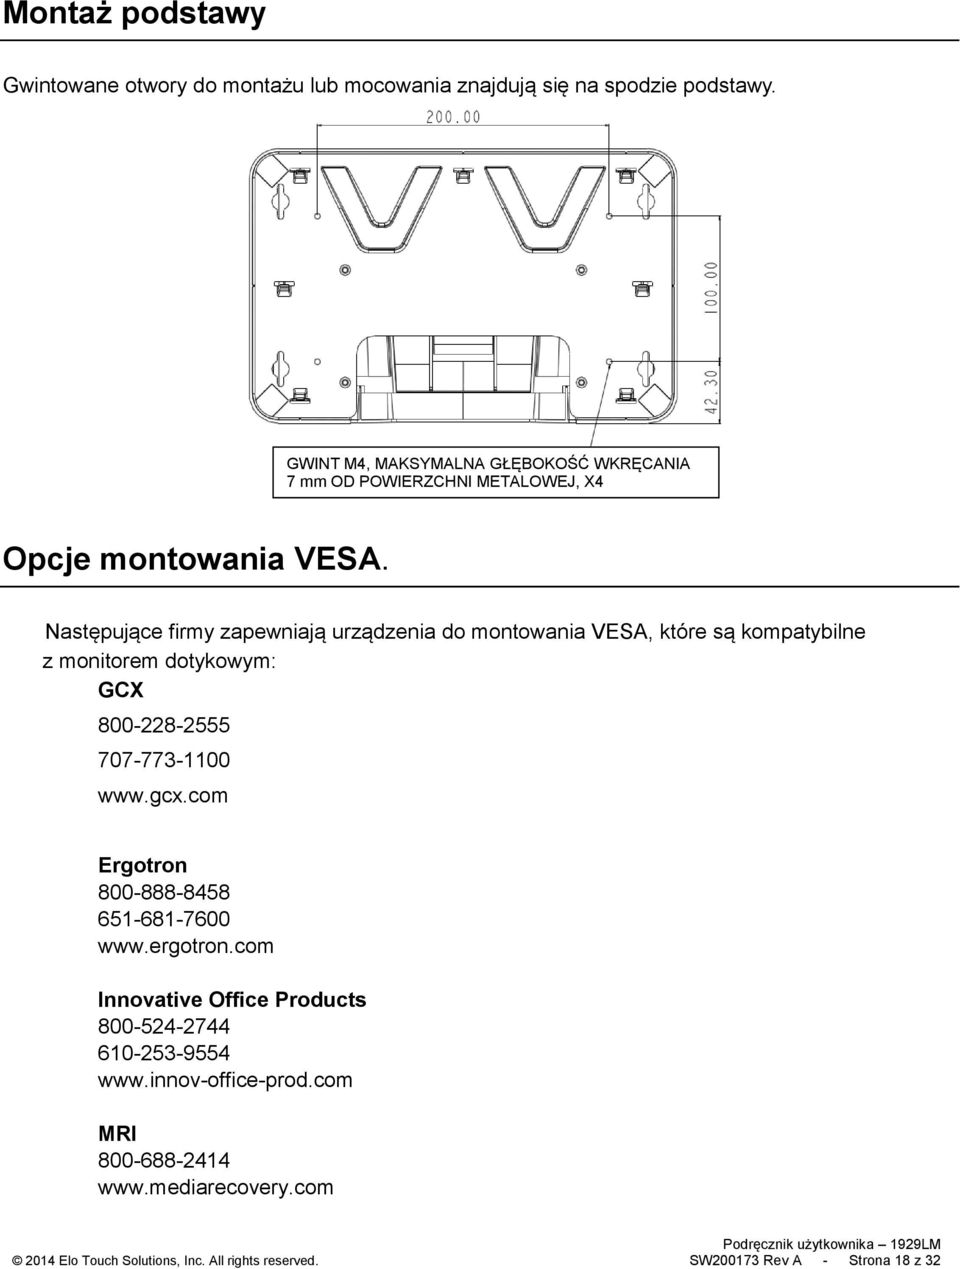 Następujące firmy zapewniają urządzenia do montowania VESA, które są kompatybilne z monitorem dotykowym: GCX 800-228-2555 707-773-1100